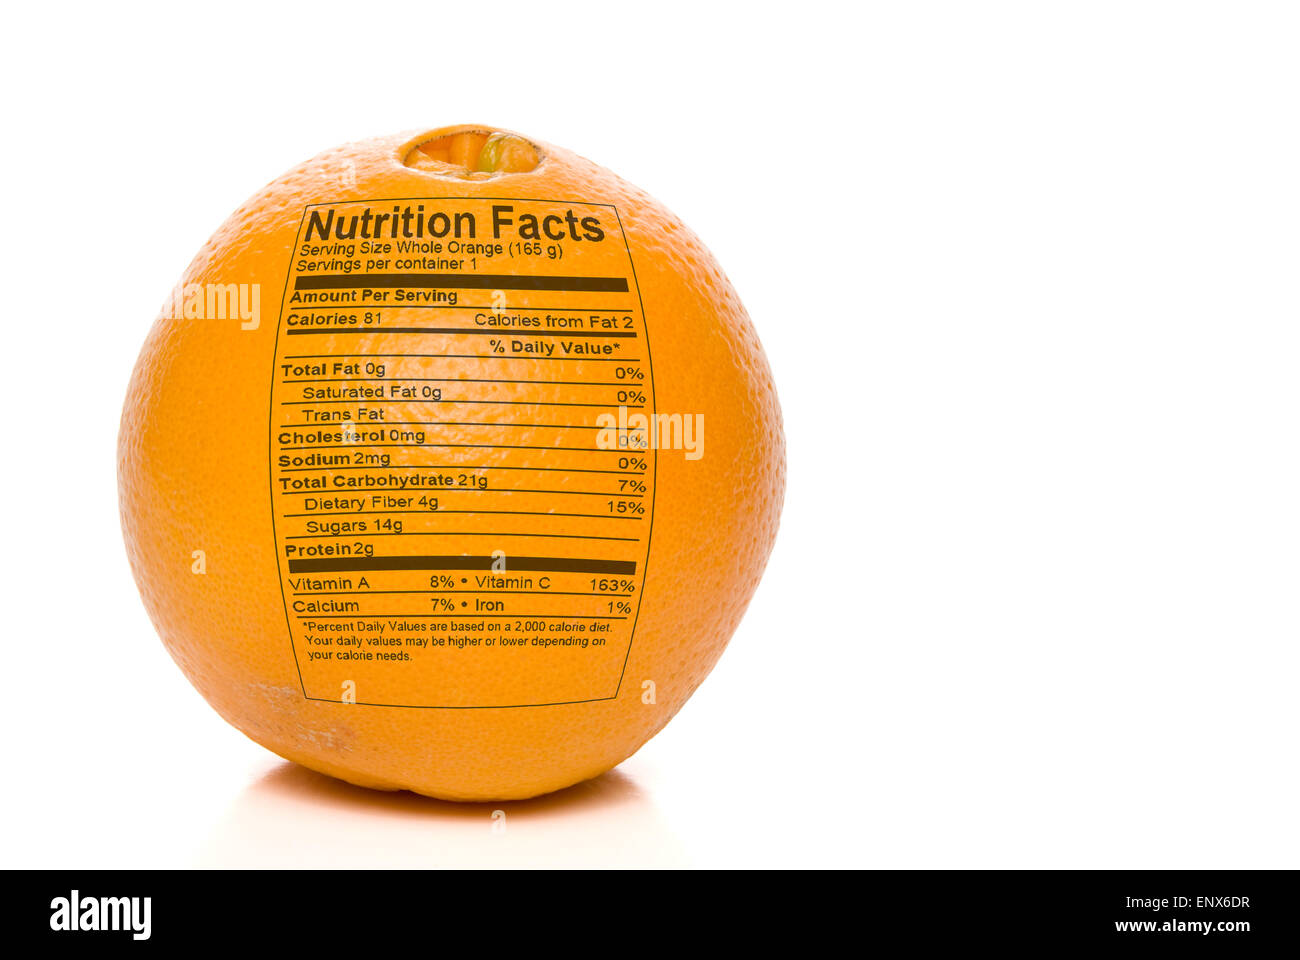 Orange nutrition facts fotografías e imágenes de alta resolución - Alamy